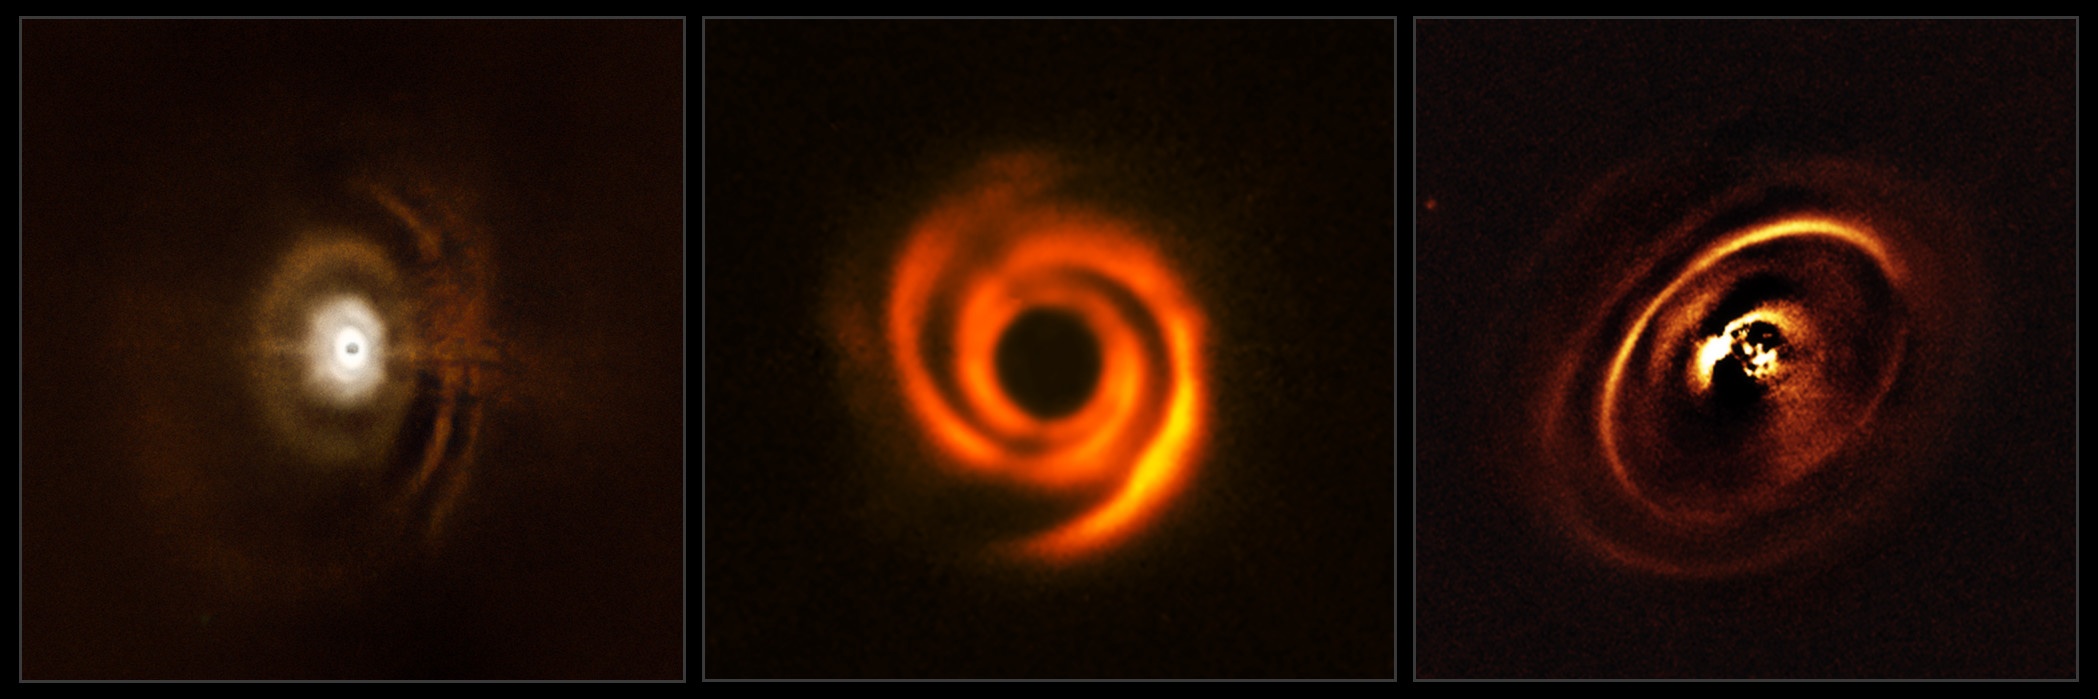 Un planeta ha azotado brazos espirales alrededor de una estrella joven